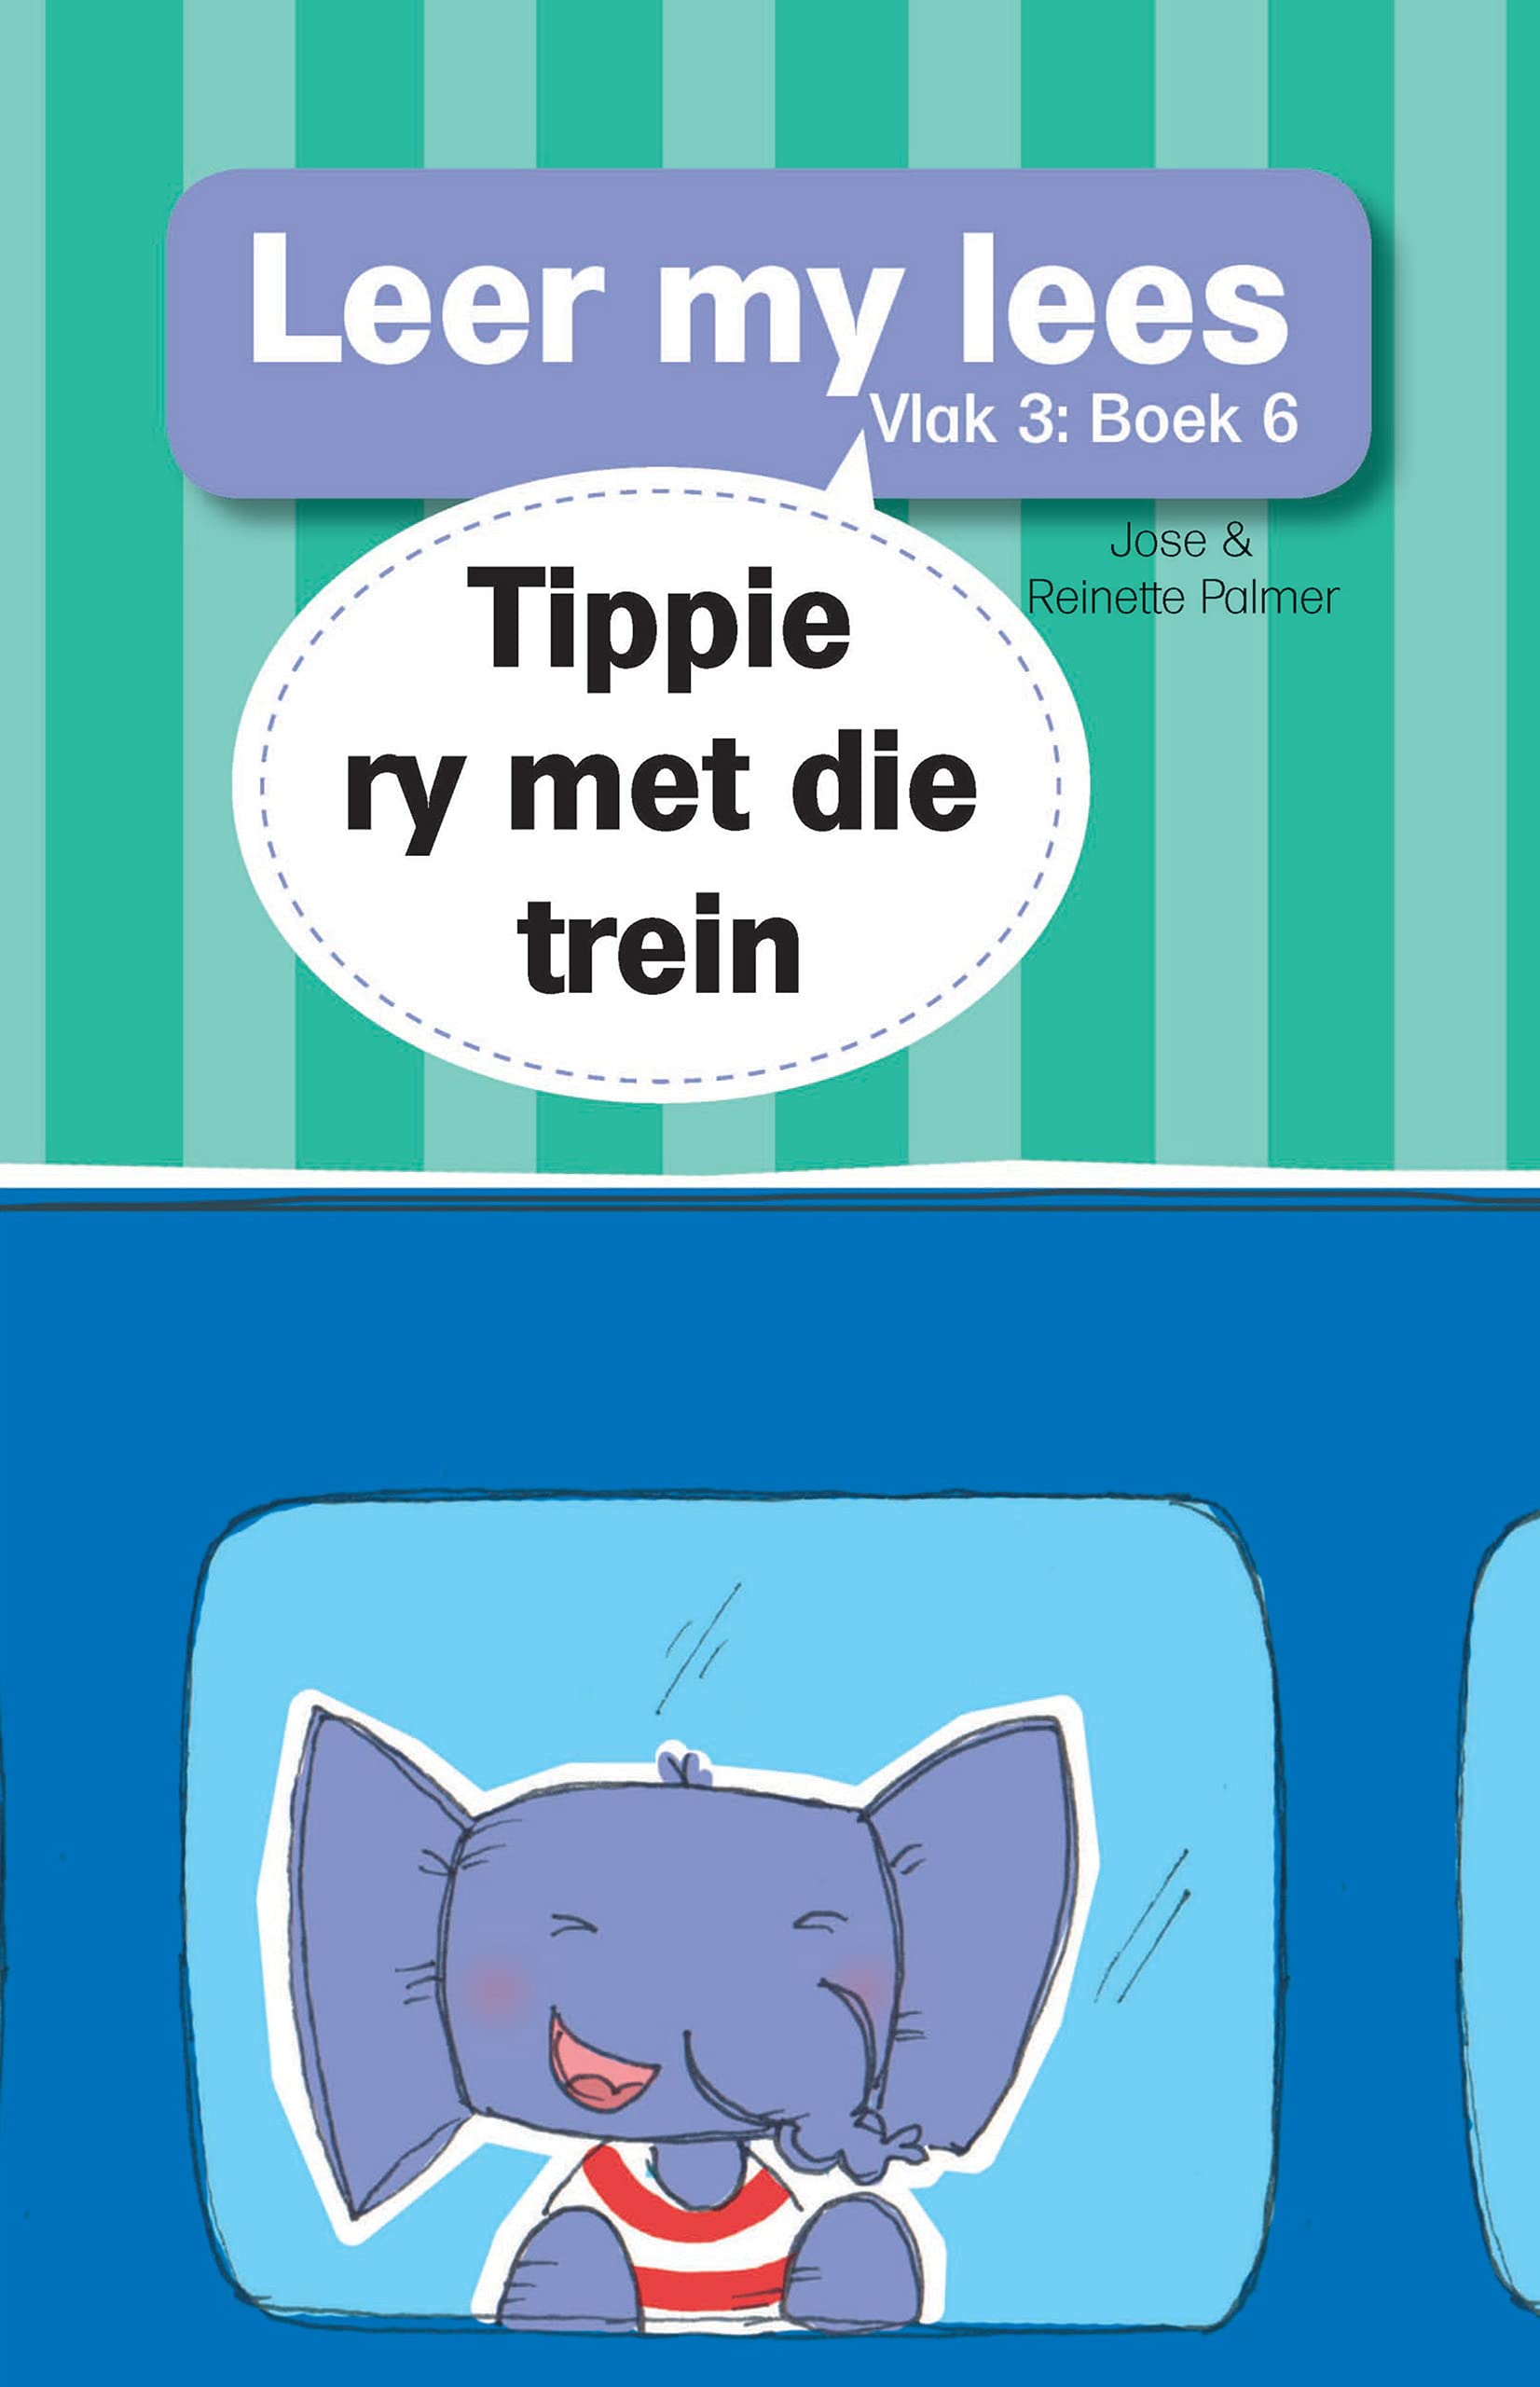 Leer my lees (Vlak 3) 6: Tippie ry met die trein (Leer my lees: Vlak 3) (Afrikaans Edition)